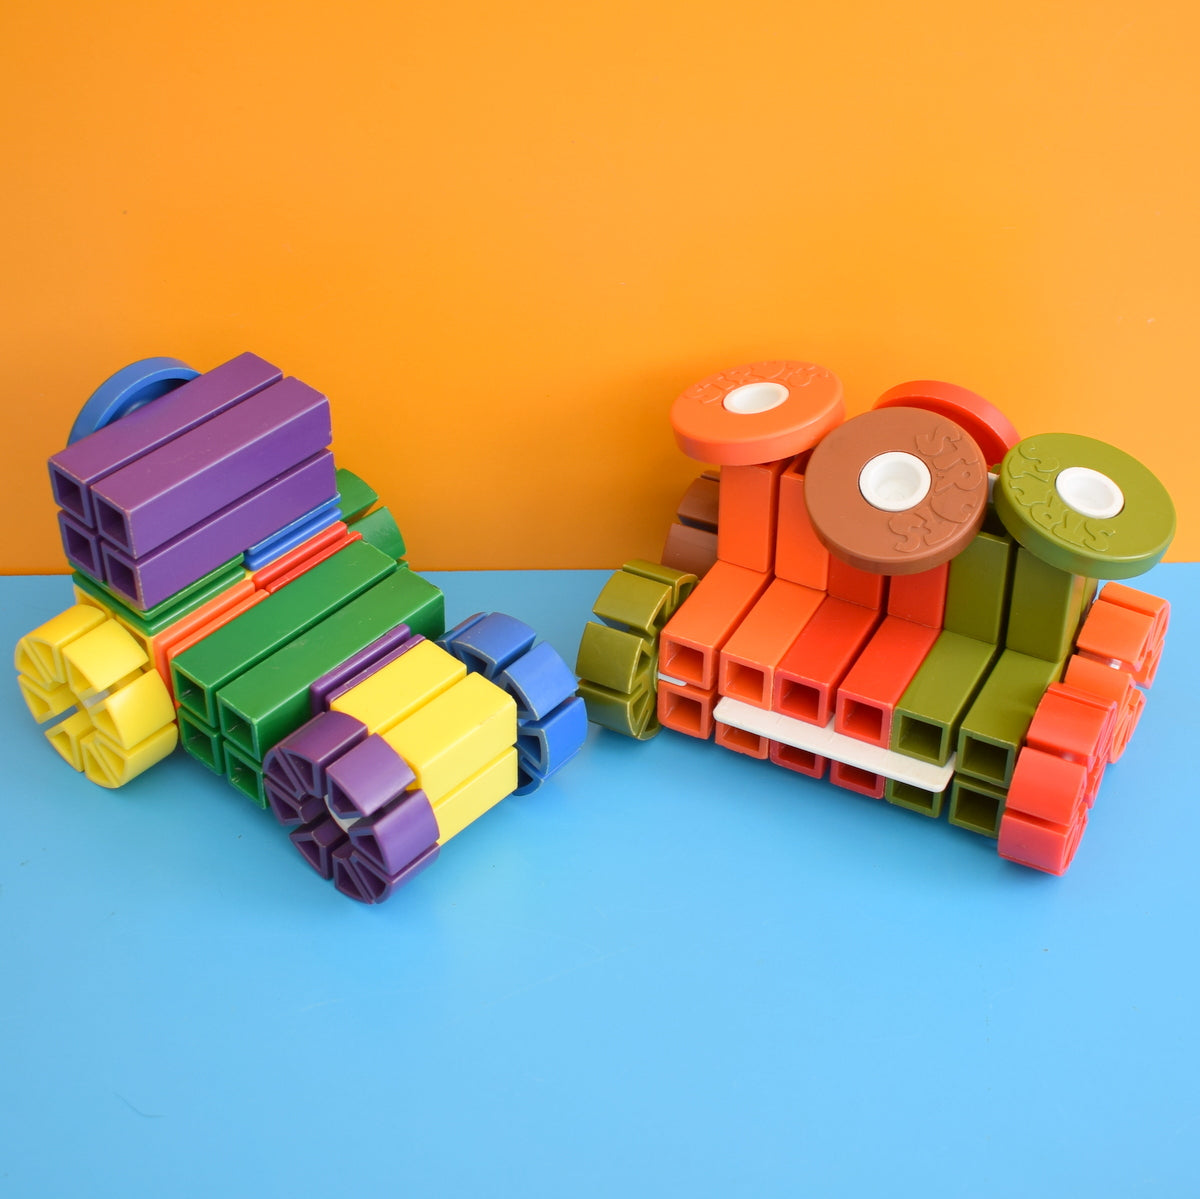 Vintage 1970s Struts - Plastic Construction Toy